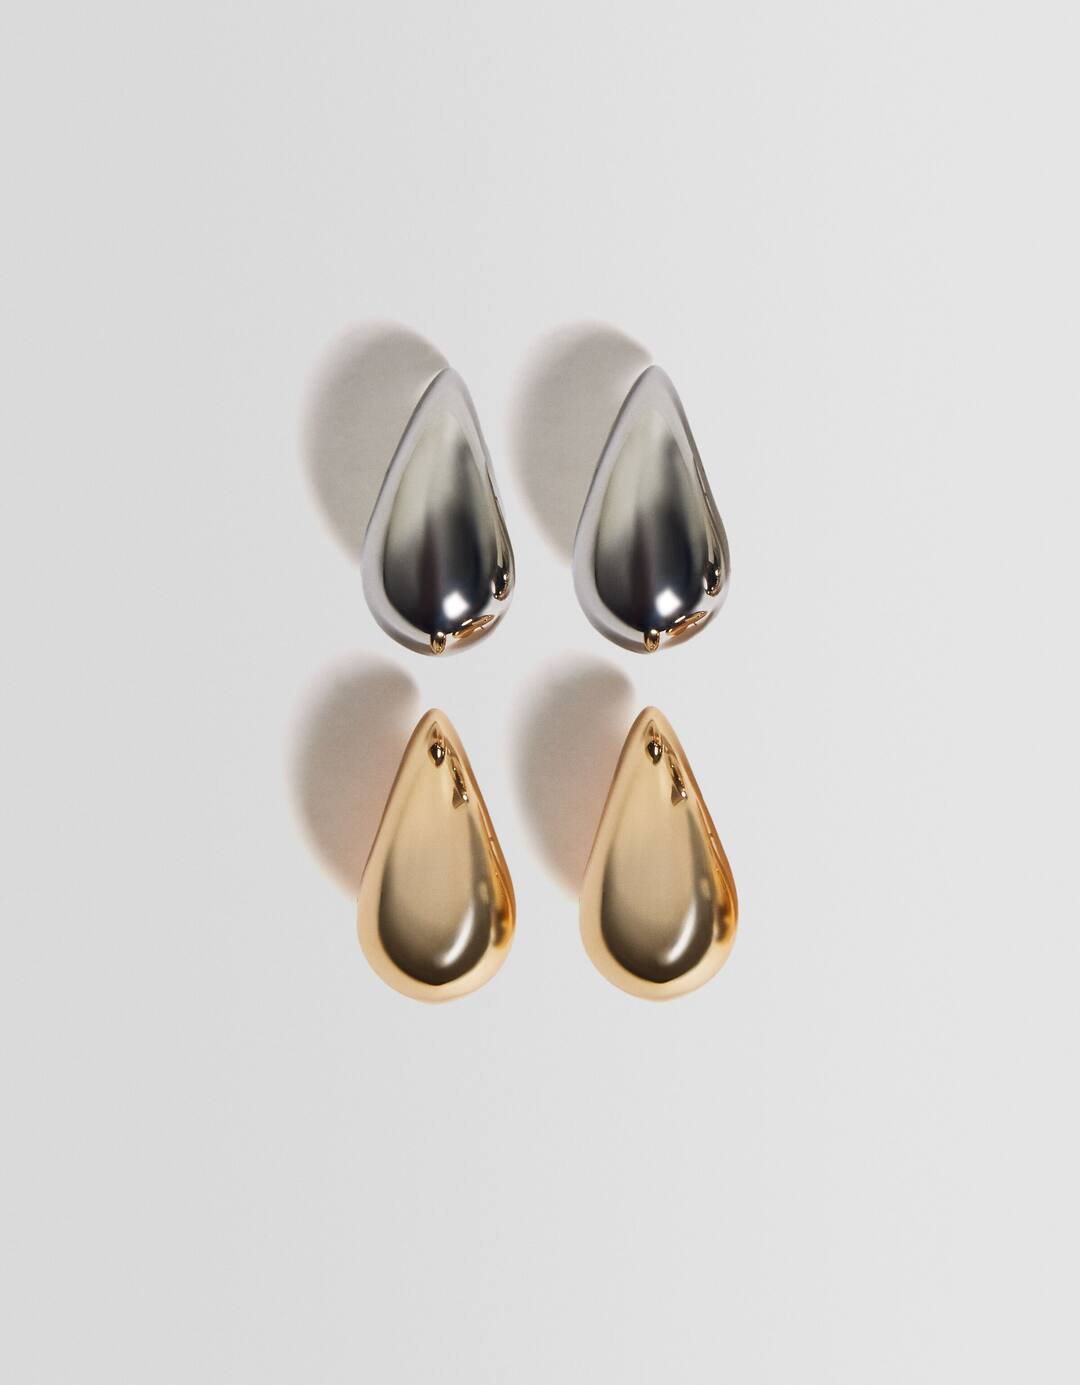 Set of 2 pairs of teardrop earrings